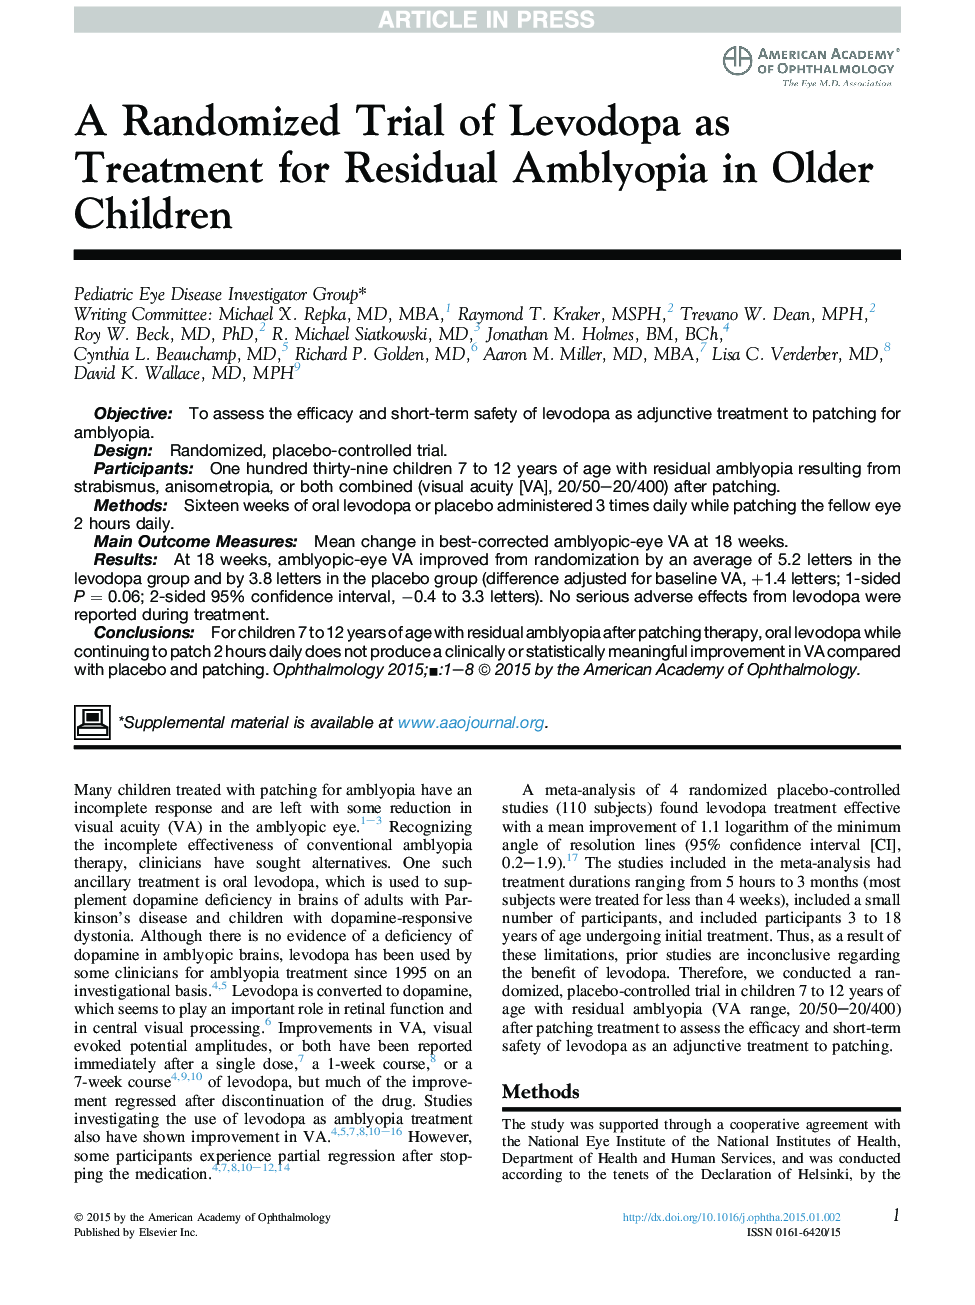 یک آزمایش تصادفی از لوودوپا به عنوان درمان آملیوپی باقی مانده در کودکان سالمند 